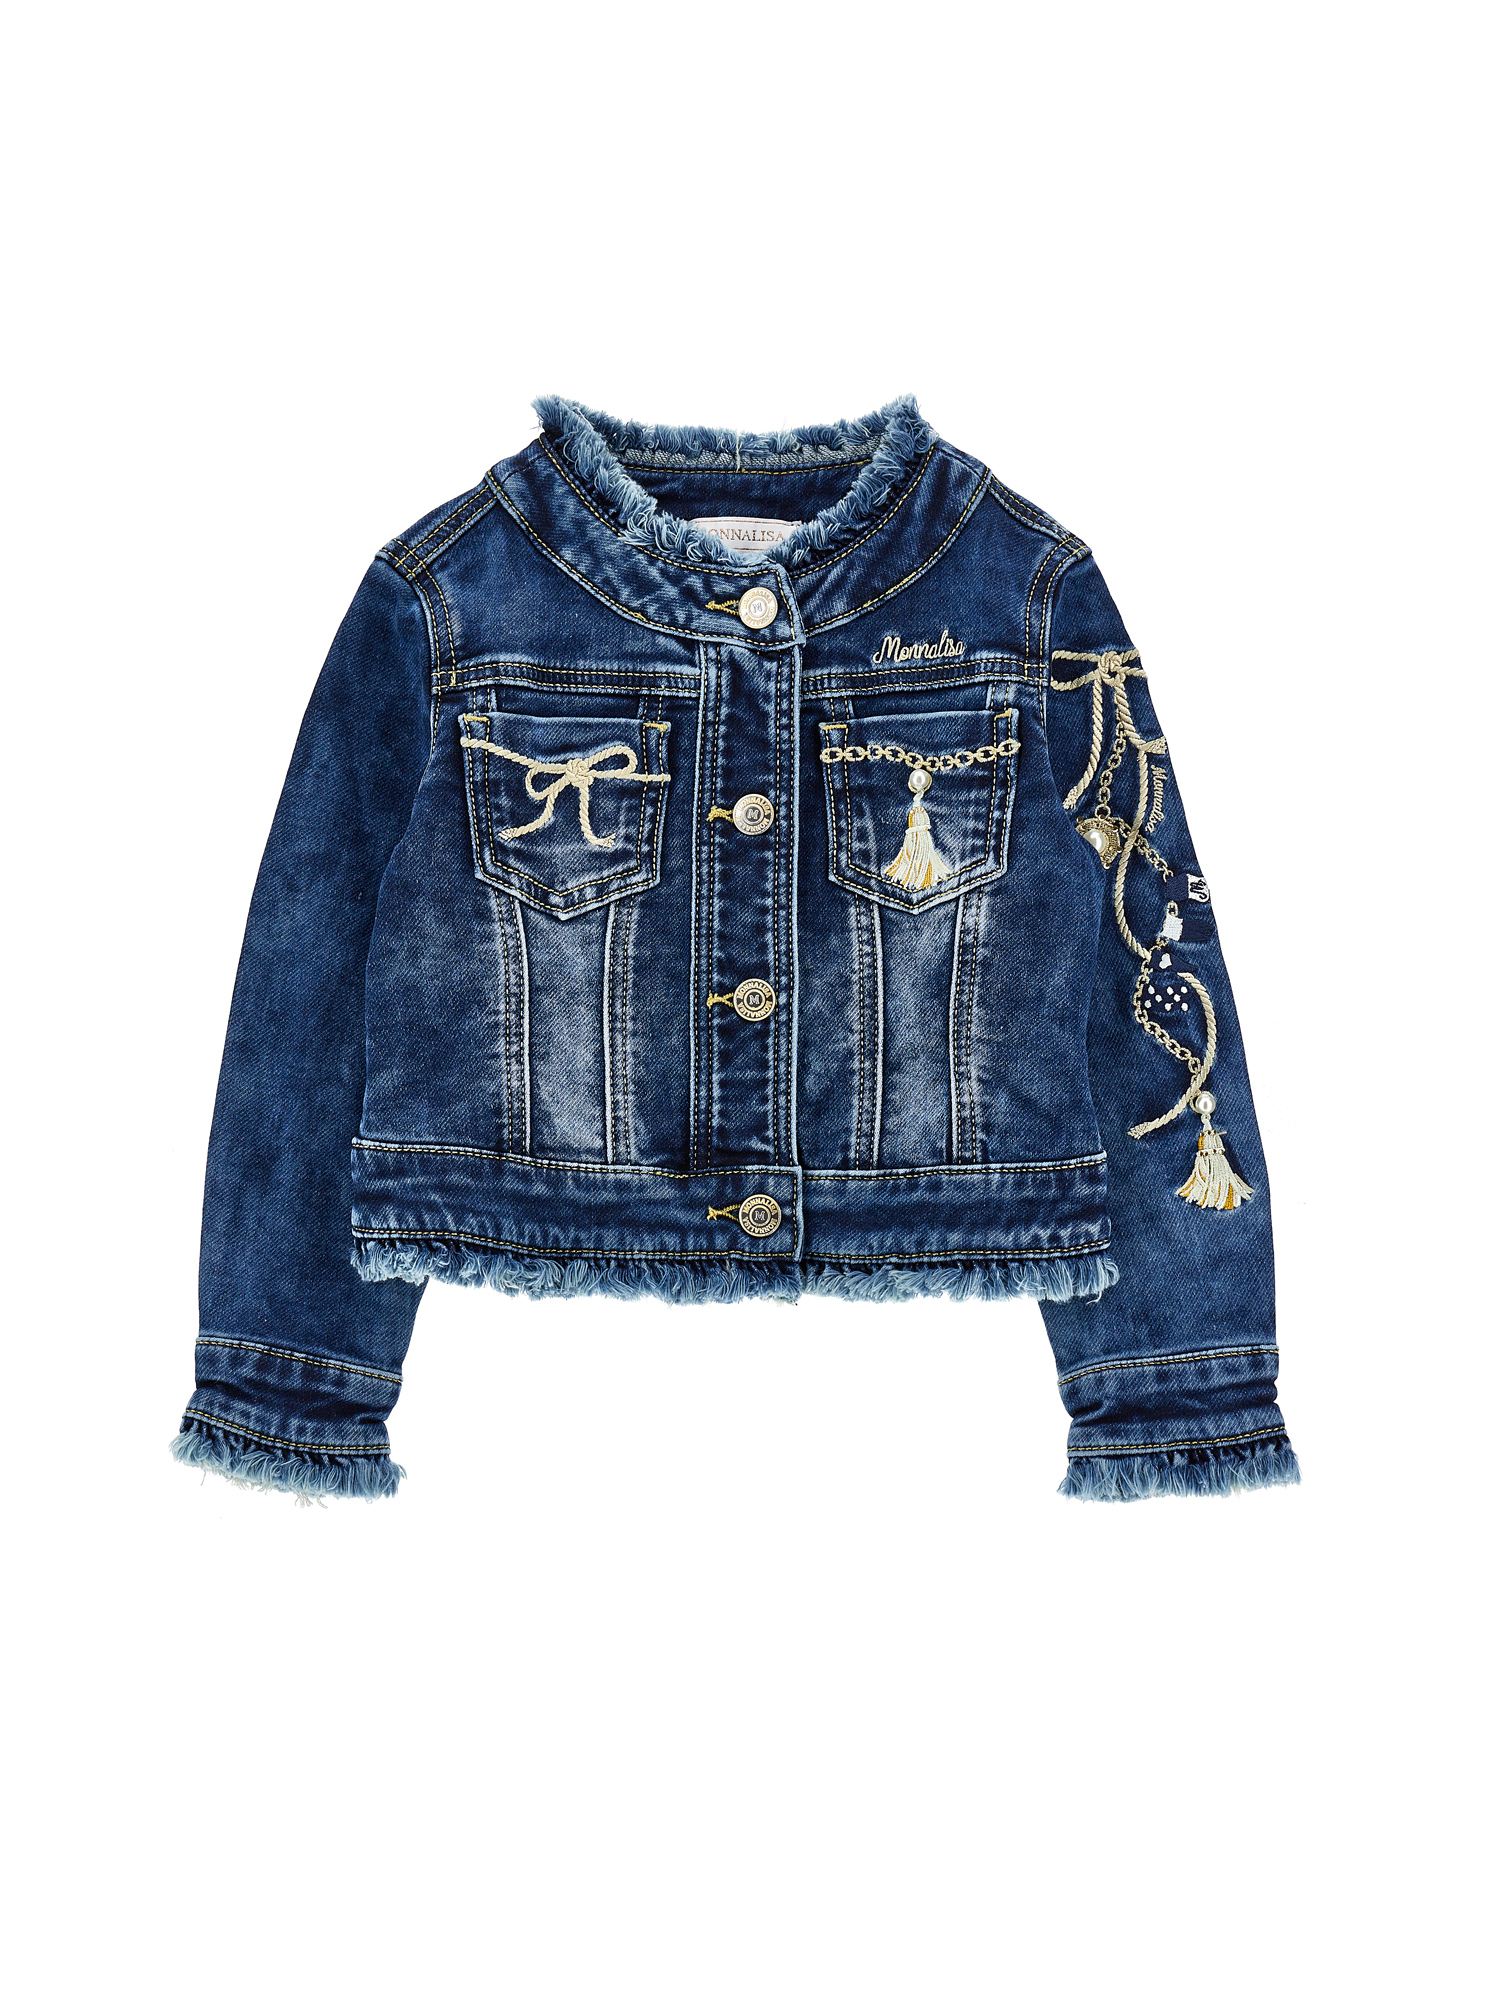 Monnalisa Kids'   Embroidered Denim Jacket In Blu Stone Denim